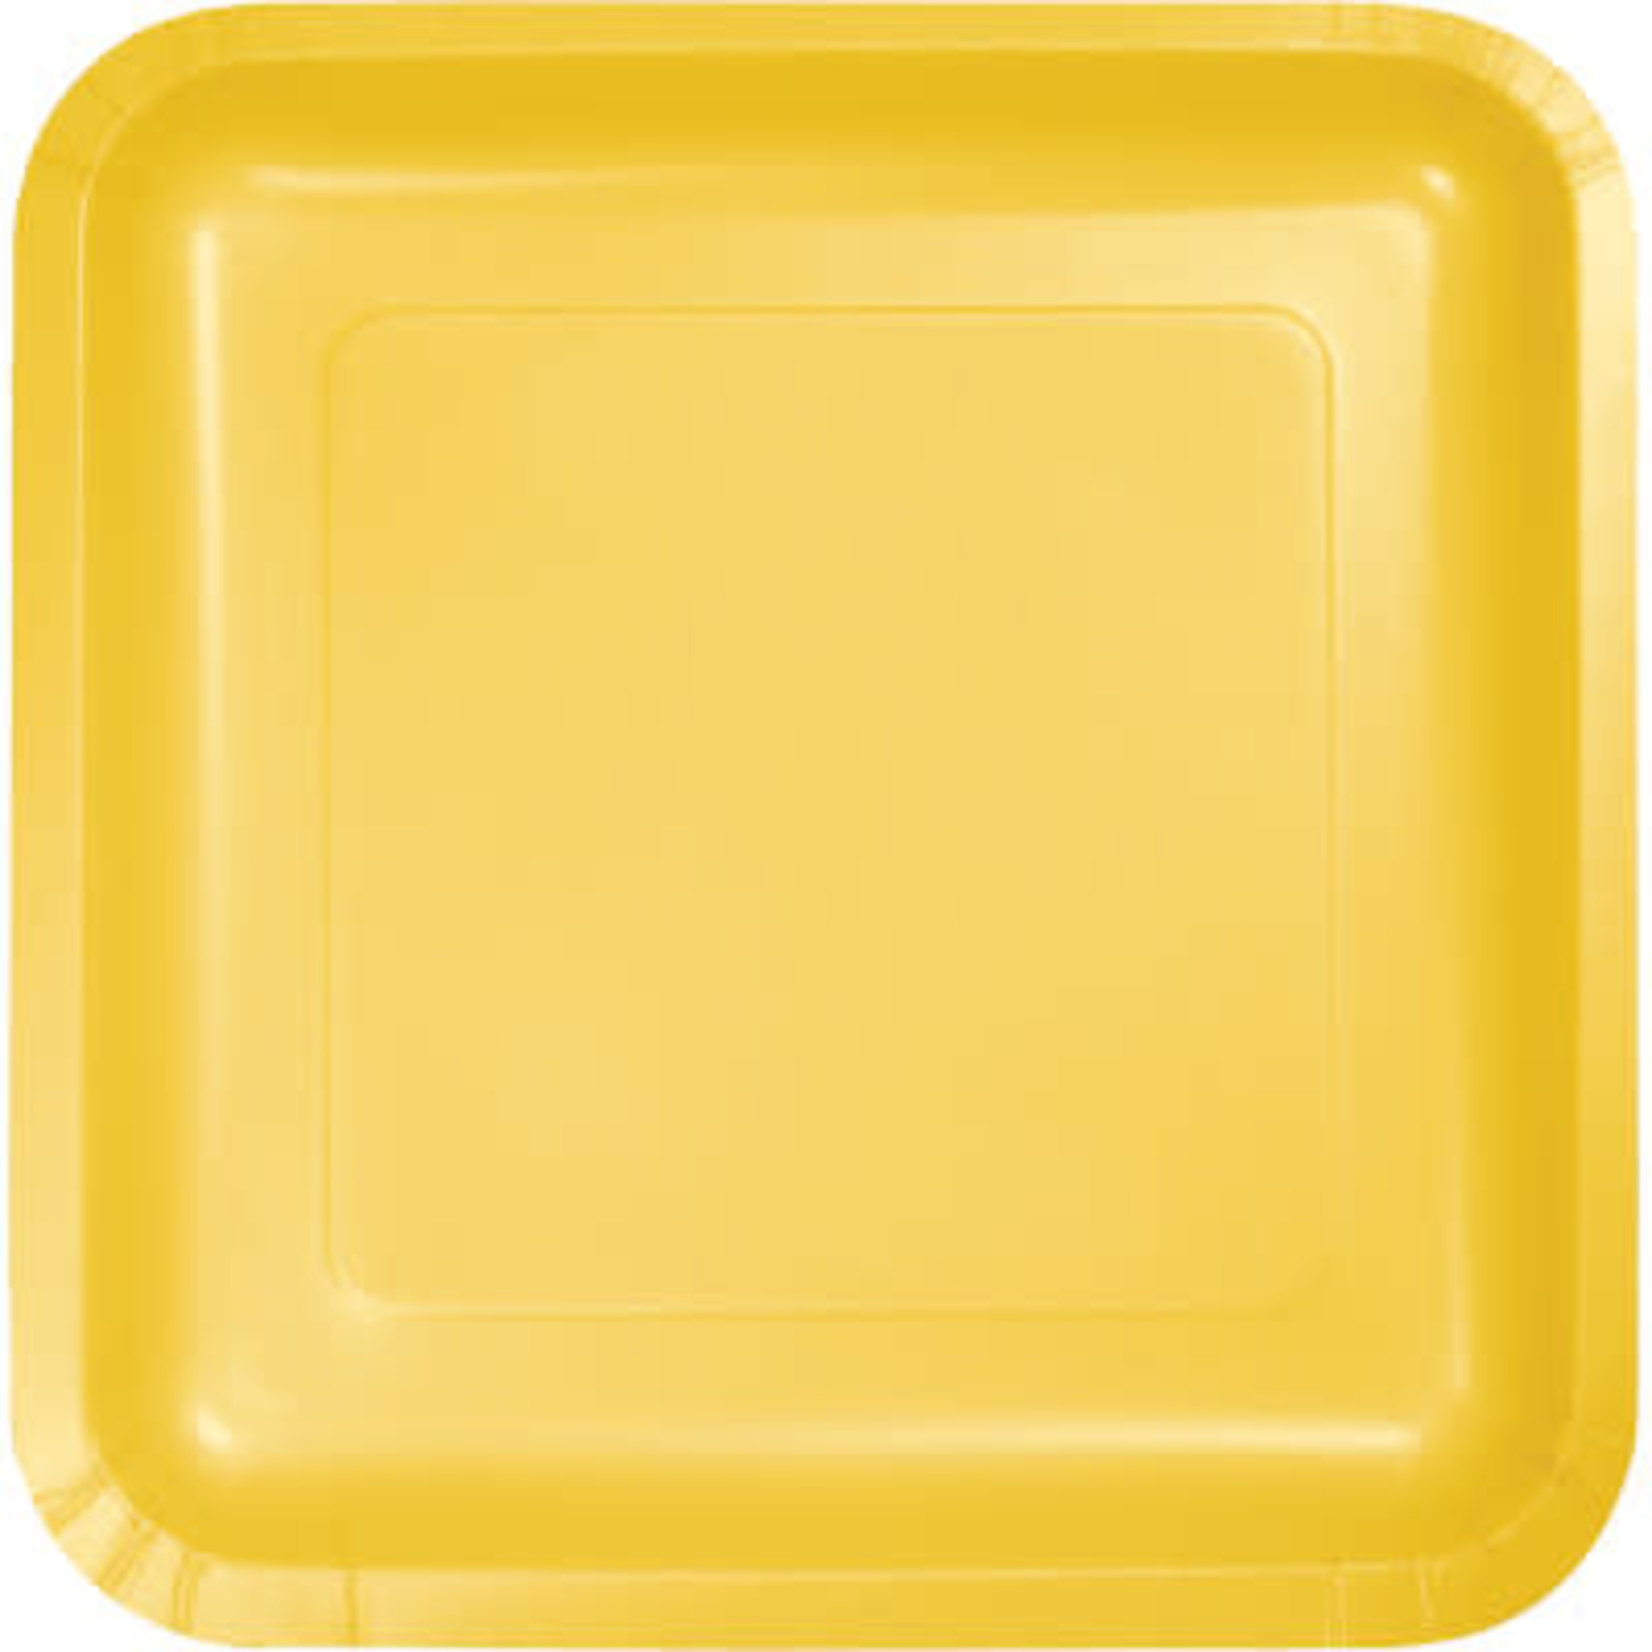 Купить квадратную форму. Квадратные тарелки. Прямоугольная цветная тарелка. Квадратные однотонные тарелки. Желтая бумажная тарелка.